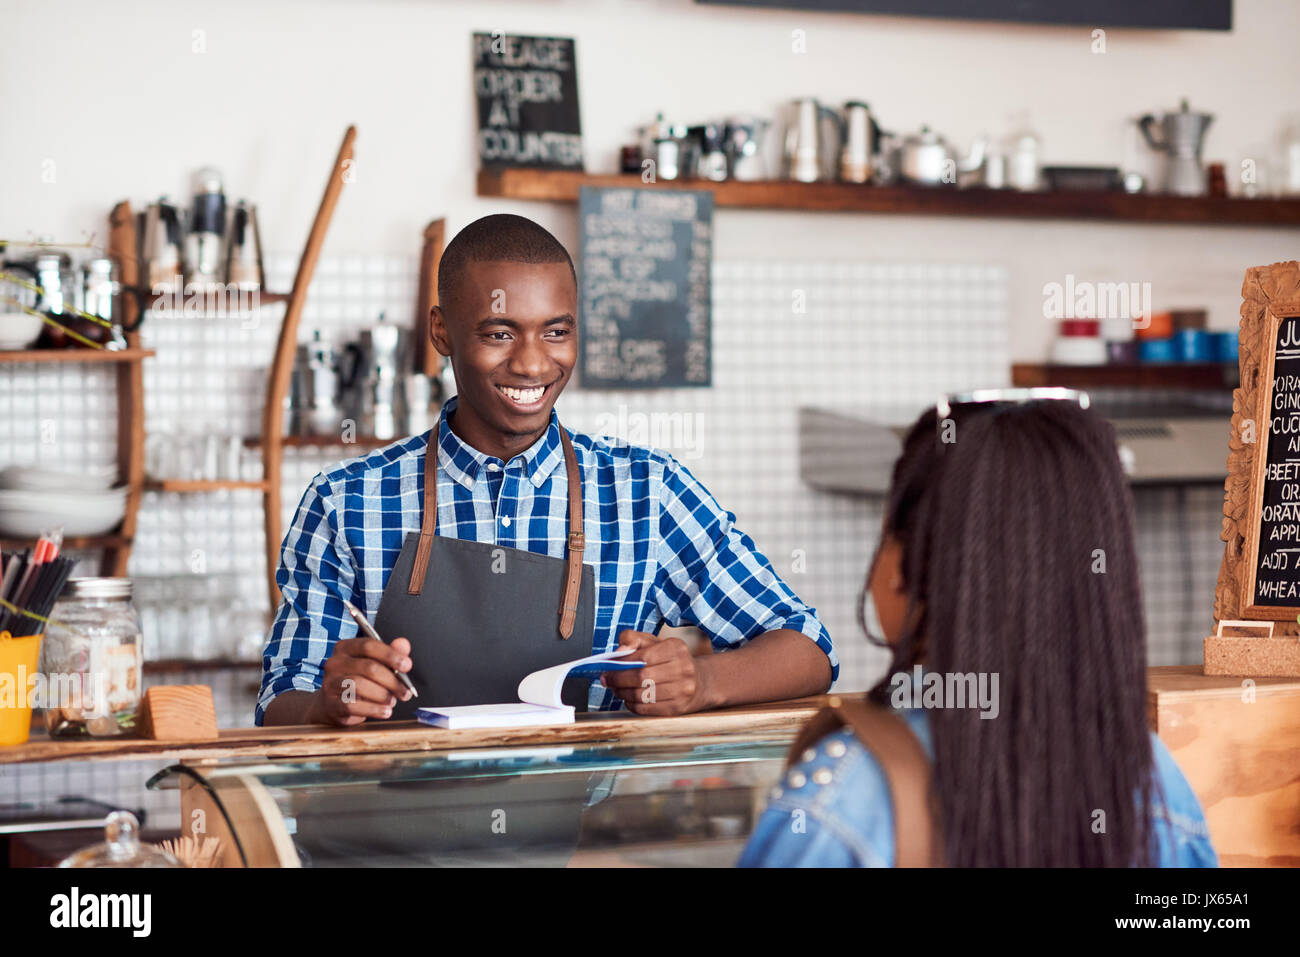 Smiling barista de parler à un client dans son cafe Banque D'Images